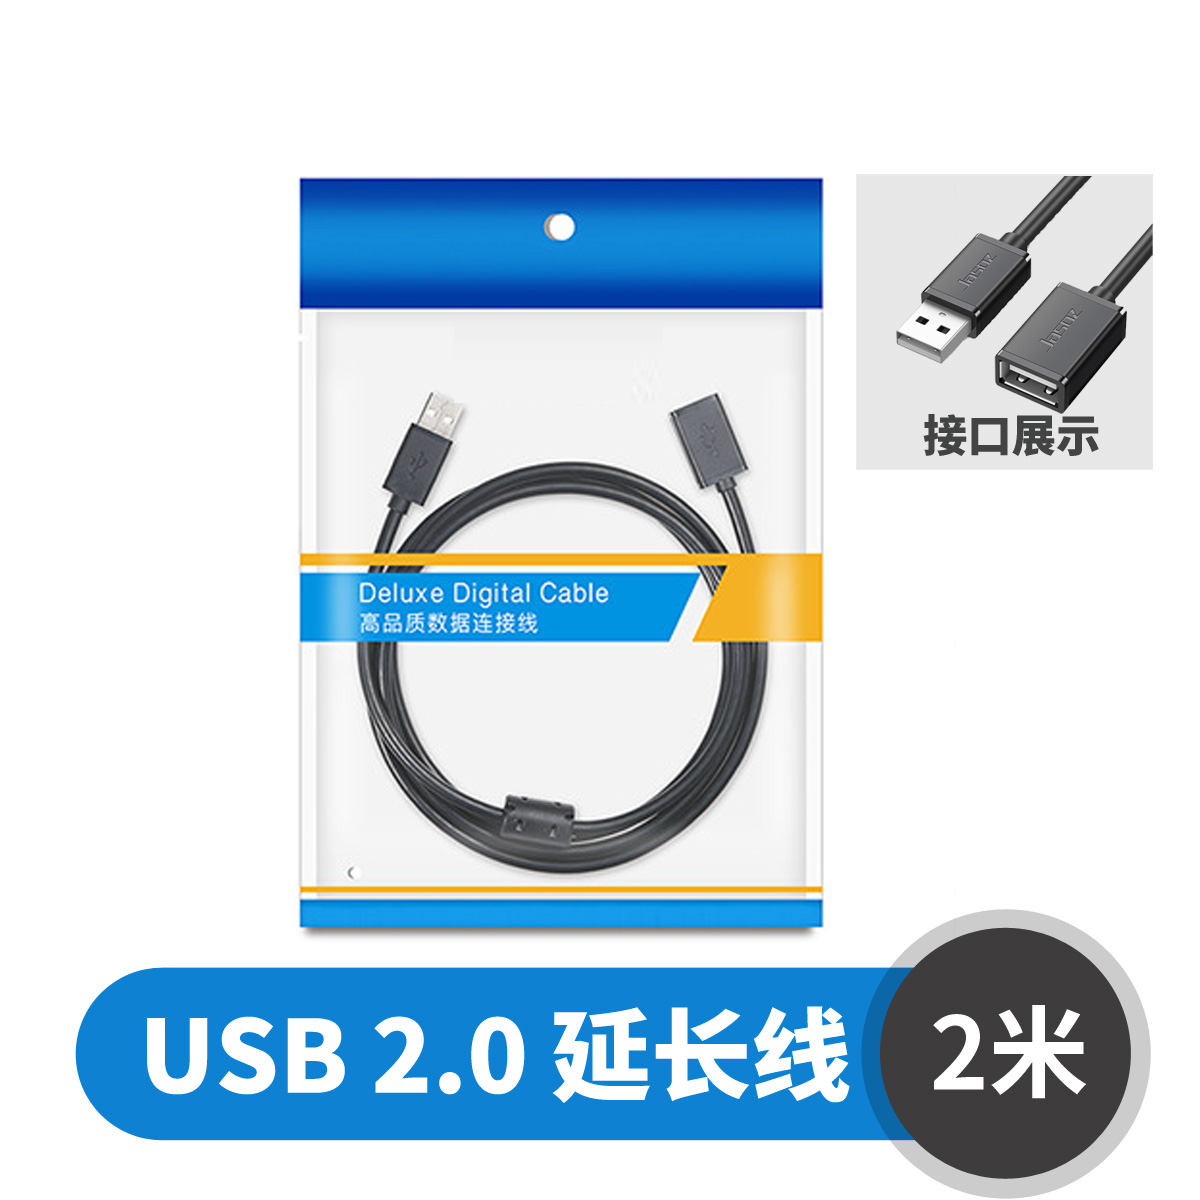 【延长线】森捷D106系列 USB2.0 延长线 （2米）